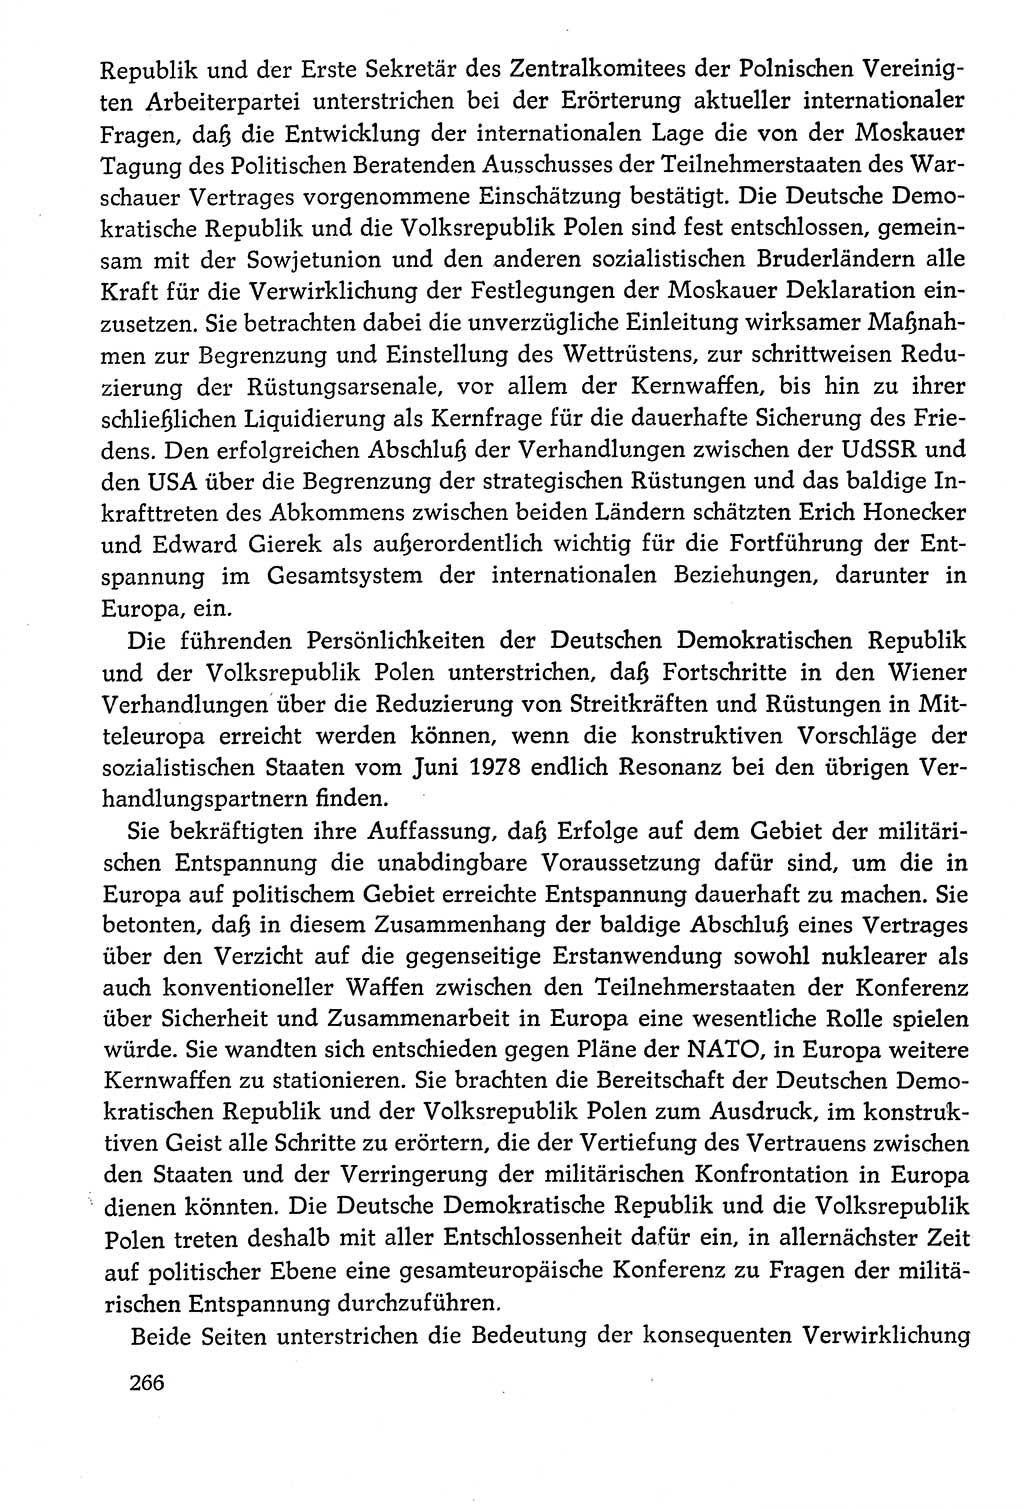 Dokumente der Sozialistischen Einheitspartei Deutschlands (SED) [Deutsche Demokratische Republik (DDR)] 1978-1979, Seite 266 (Dok. SED DDR 1978-1979, S. 266)